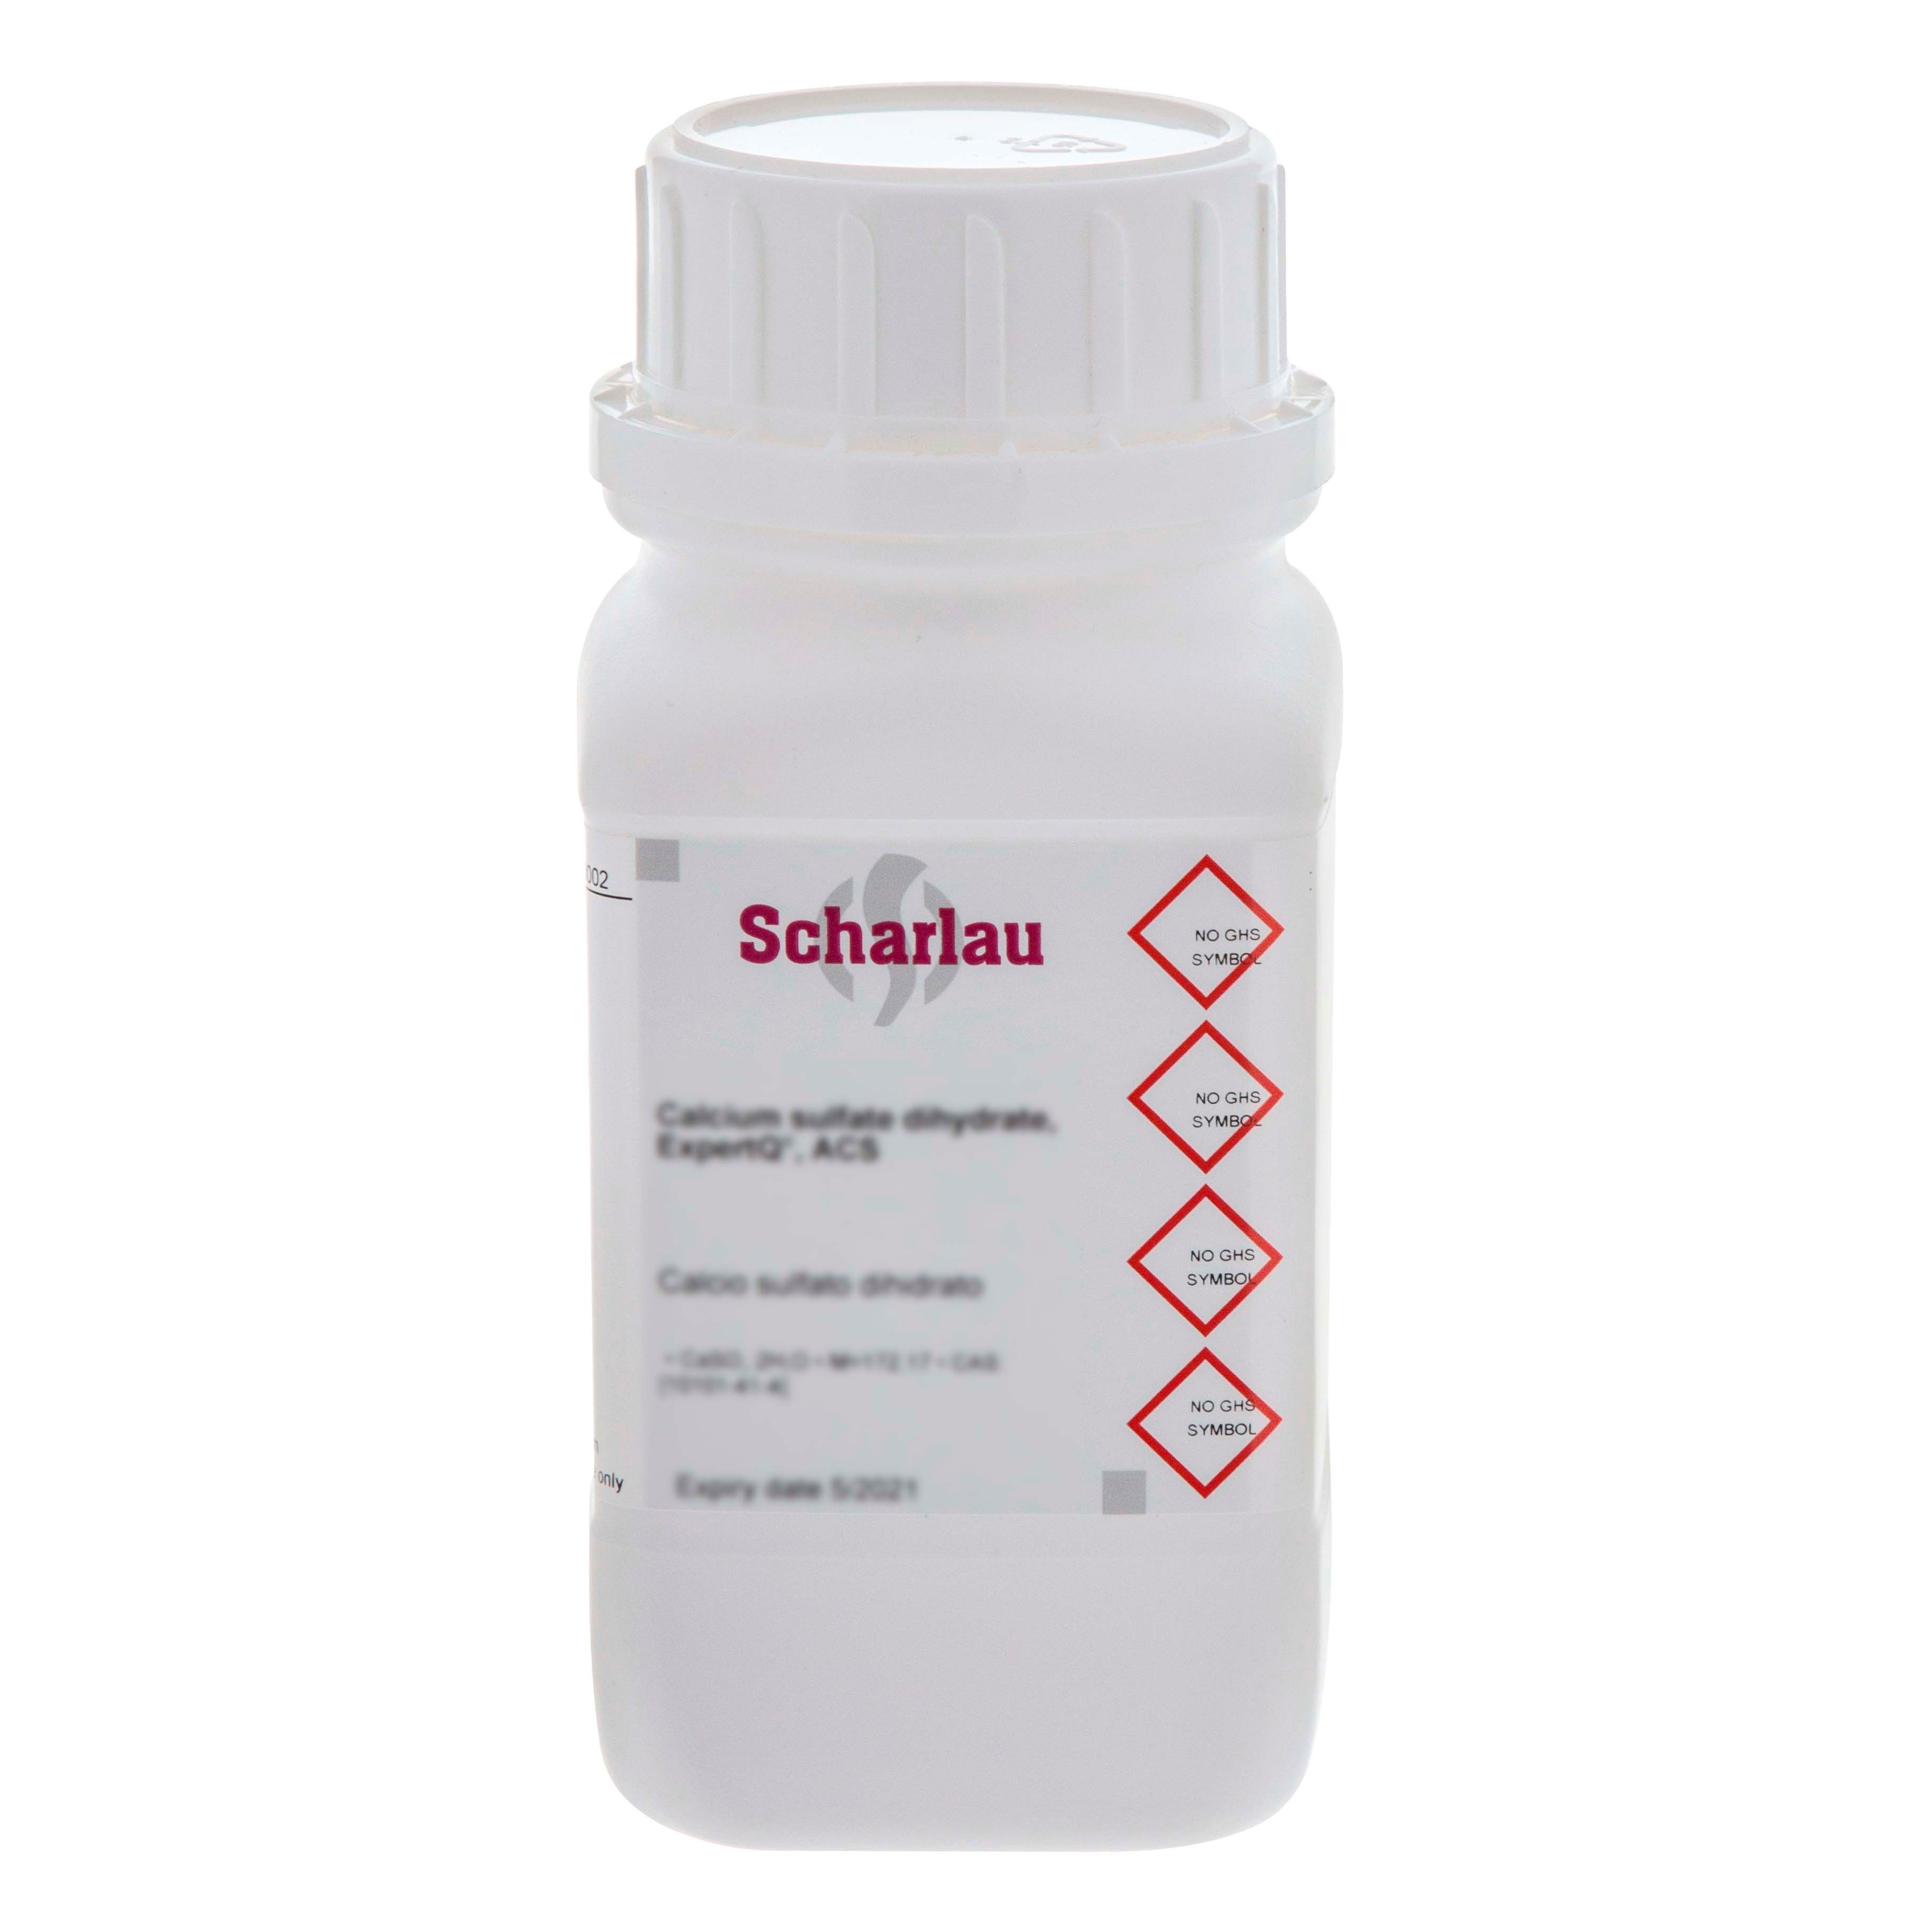 Sodio desoxicolato, para microbiología, Ácido desoxicólico, sal de sodio; Ácido 3a,12a-dihidroxi-5b-colánico, sal de sodio